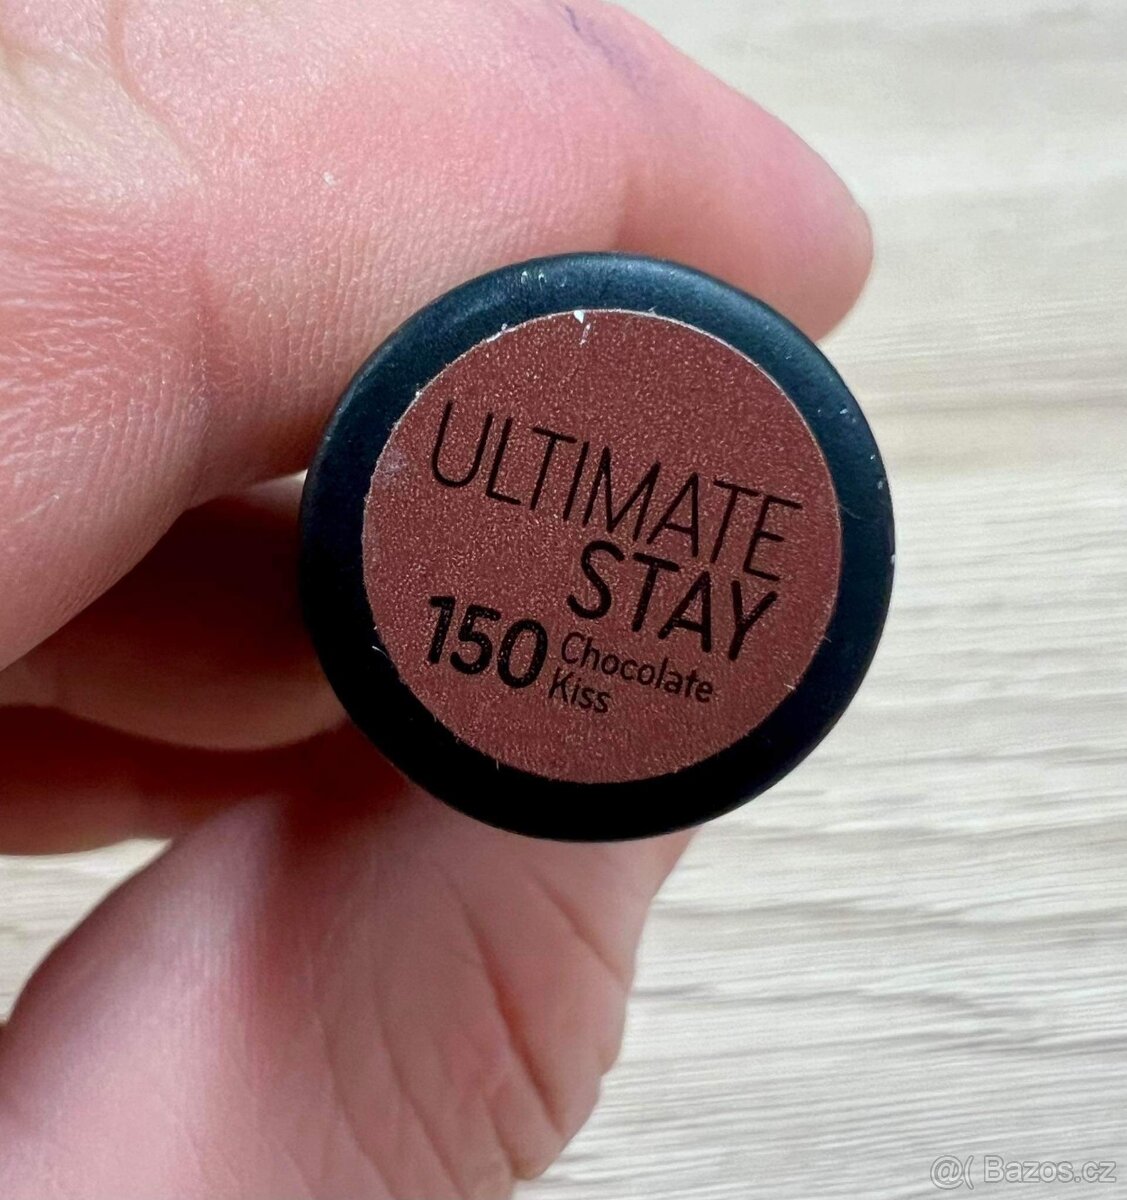 Nová rtěnka Ultimate Stay Catrice odstín 150 Chocolate Kiss